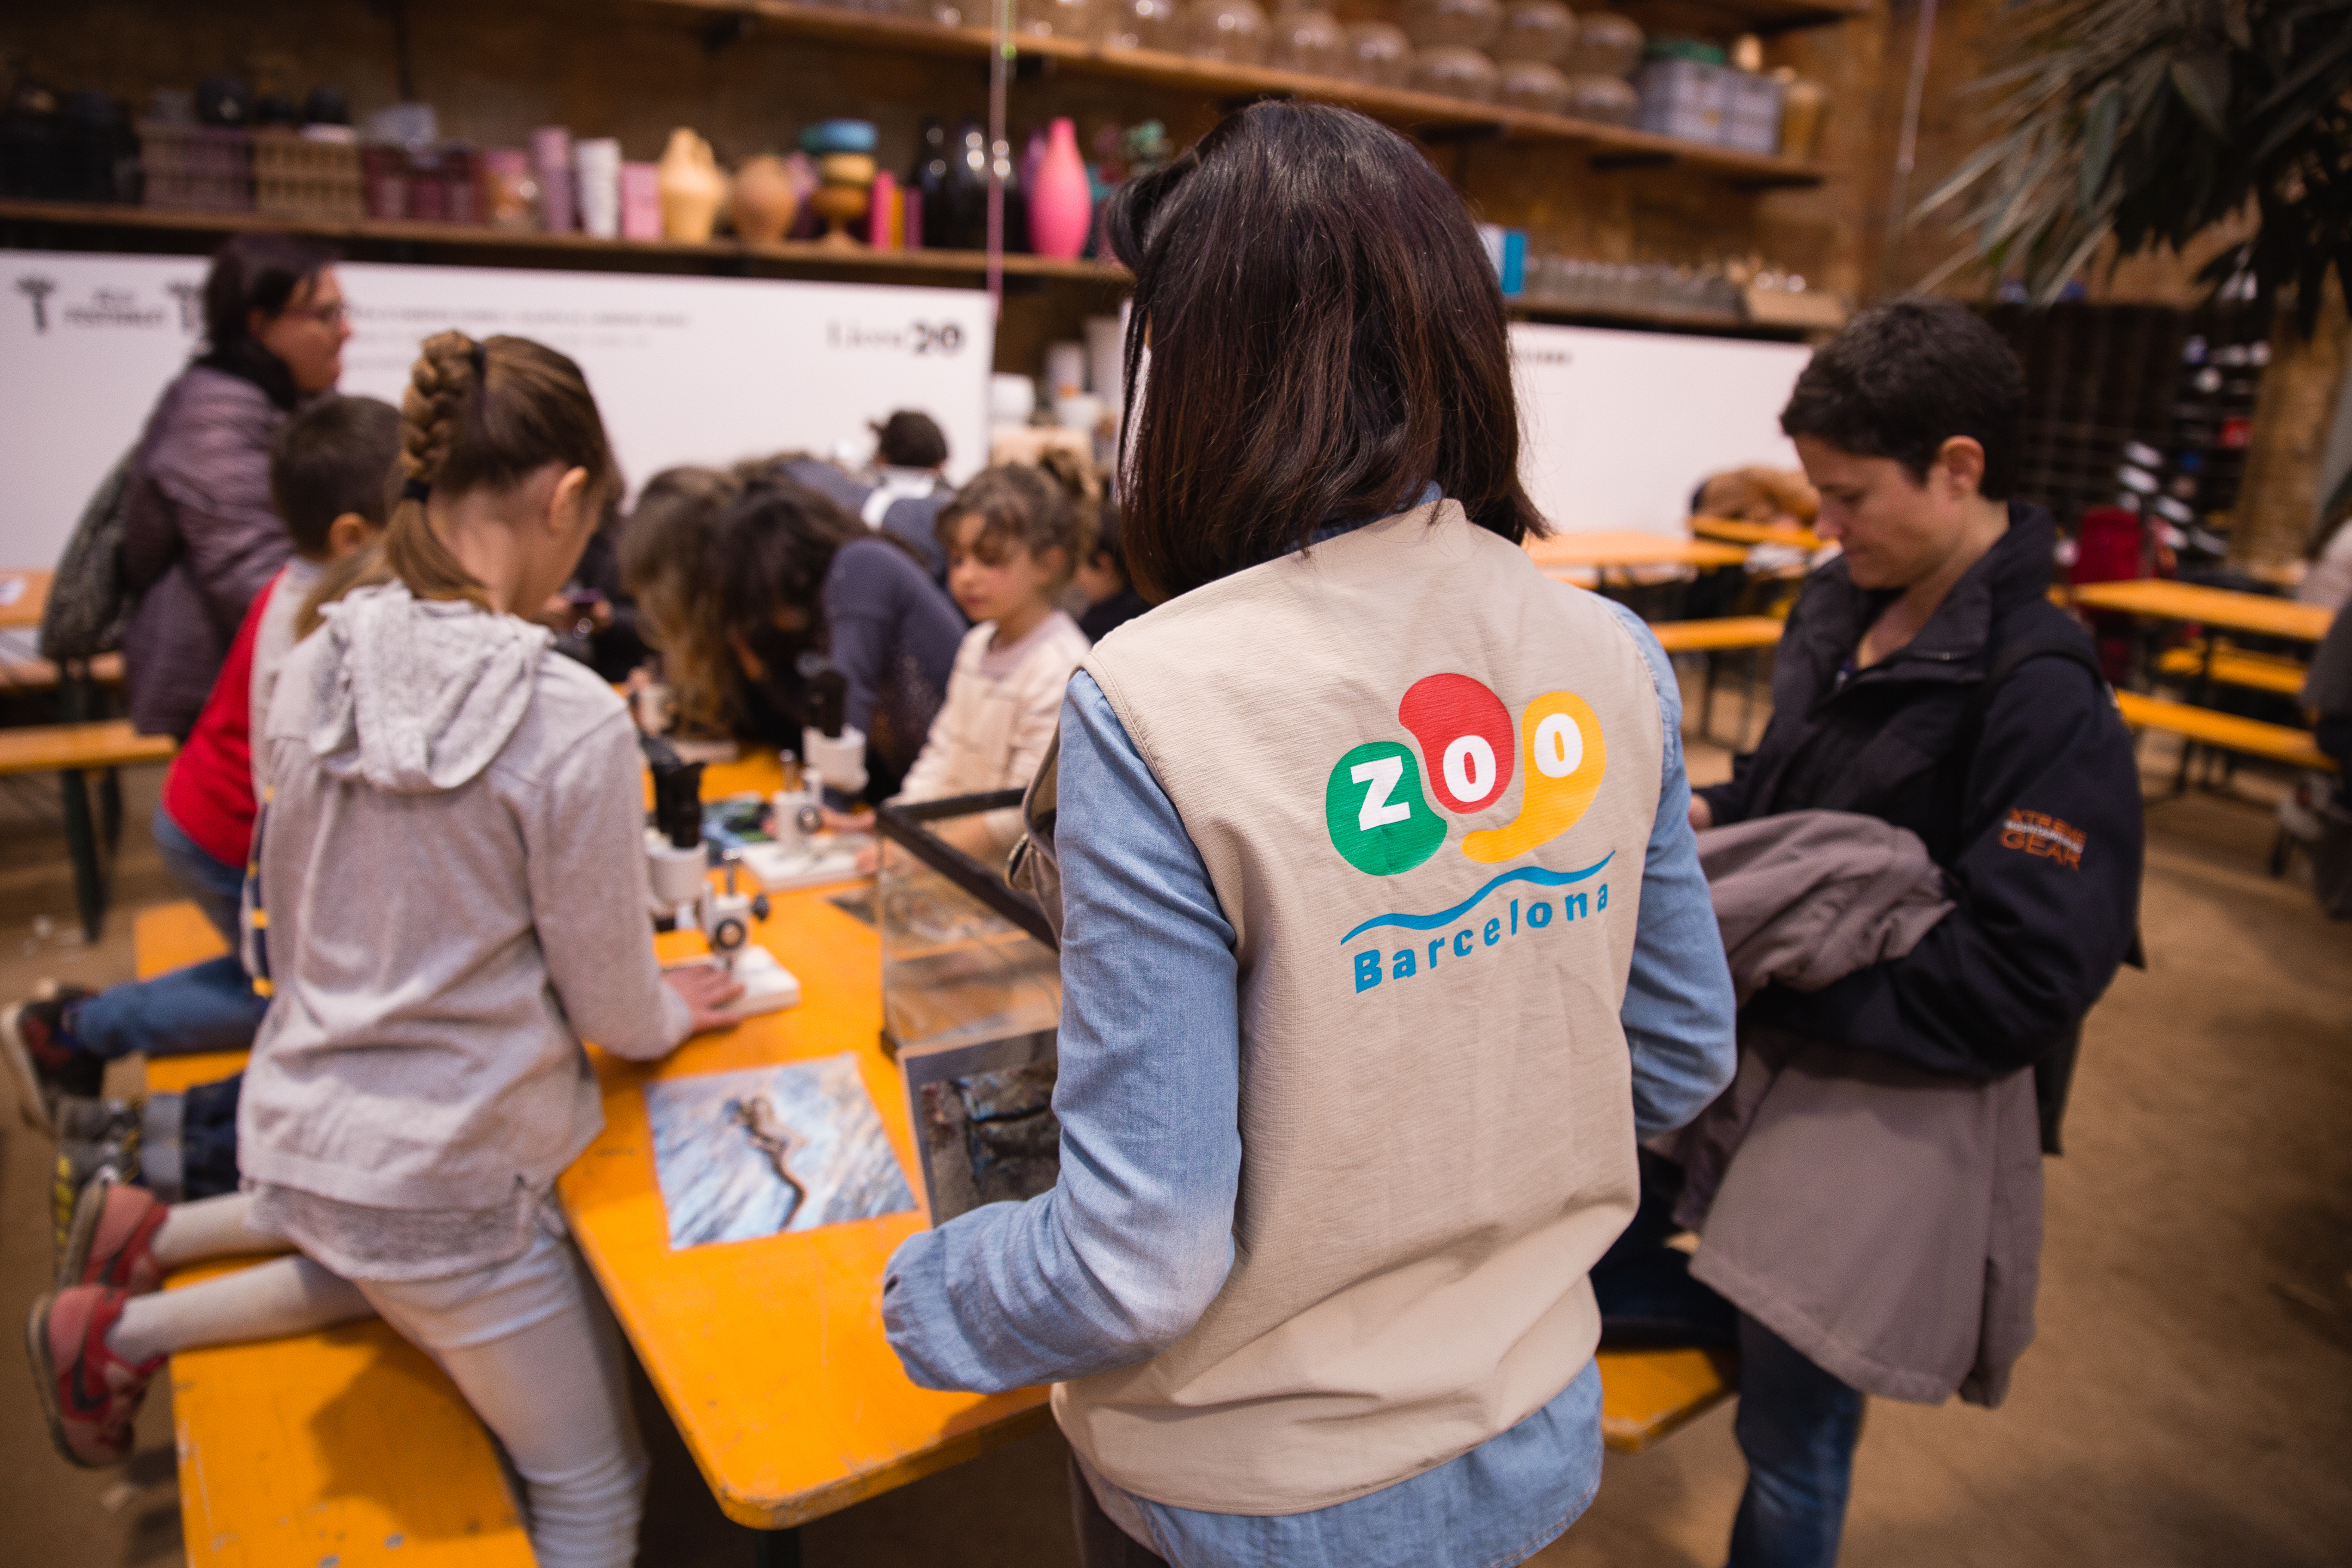 Barcelona aprueba su nuevo modelo de Zoo, el que refuerza el compromiso de la ciudad con la preservación del planeta | Zoo Barcelona